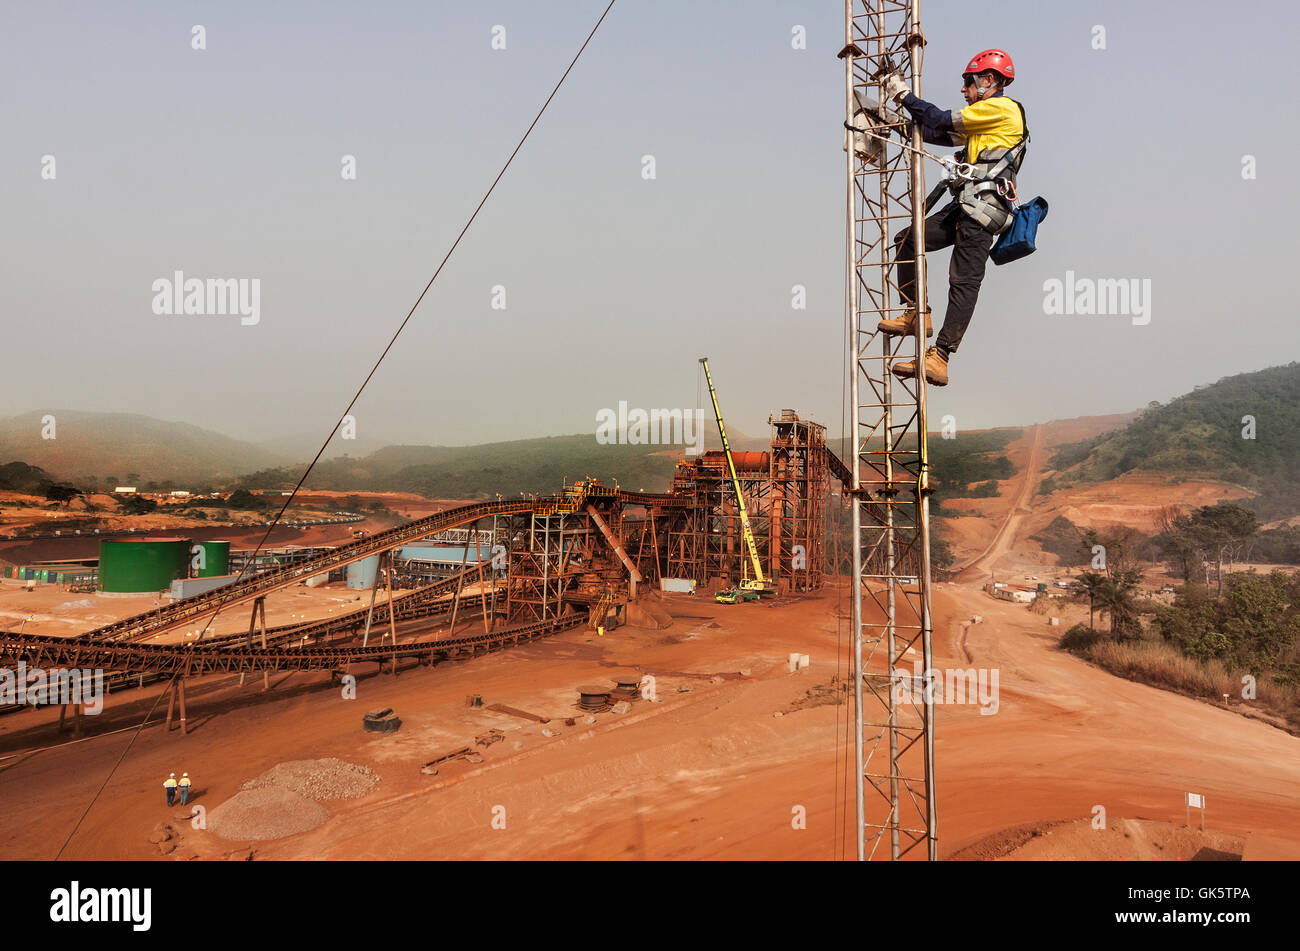 Eisenerz Bergwerk in Sierra Leone auf dem Weg zu Process plant. Telekommunikation Ingenieur bis Tower arbeiten an Mikrowelle Radio Network Link, Einstellung der Antennenausrichtung. Stockfoto